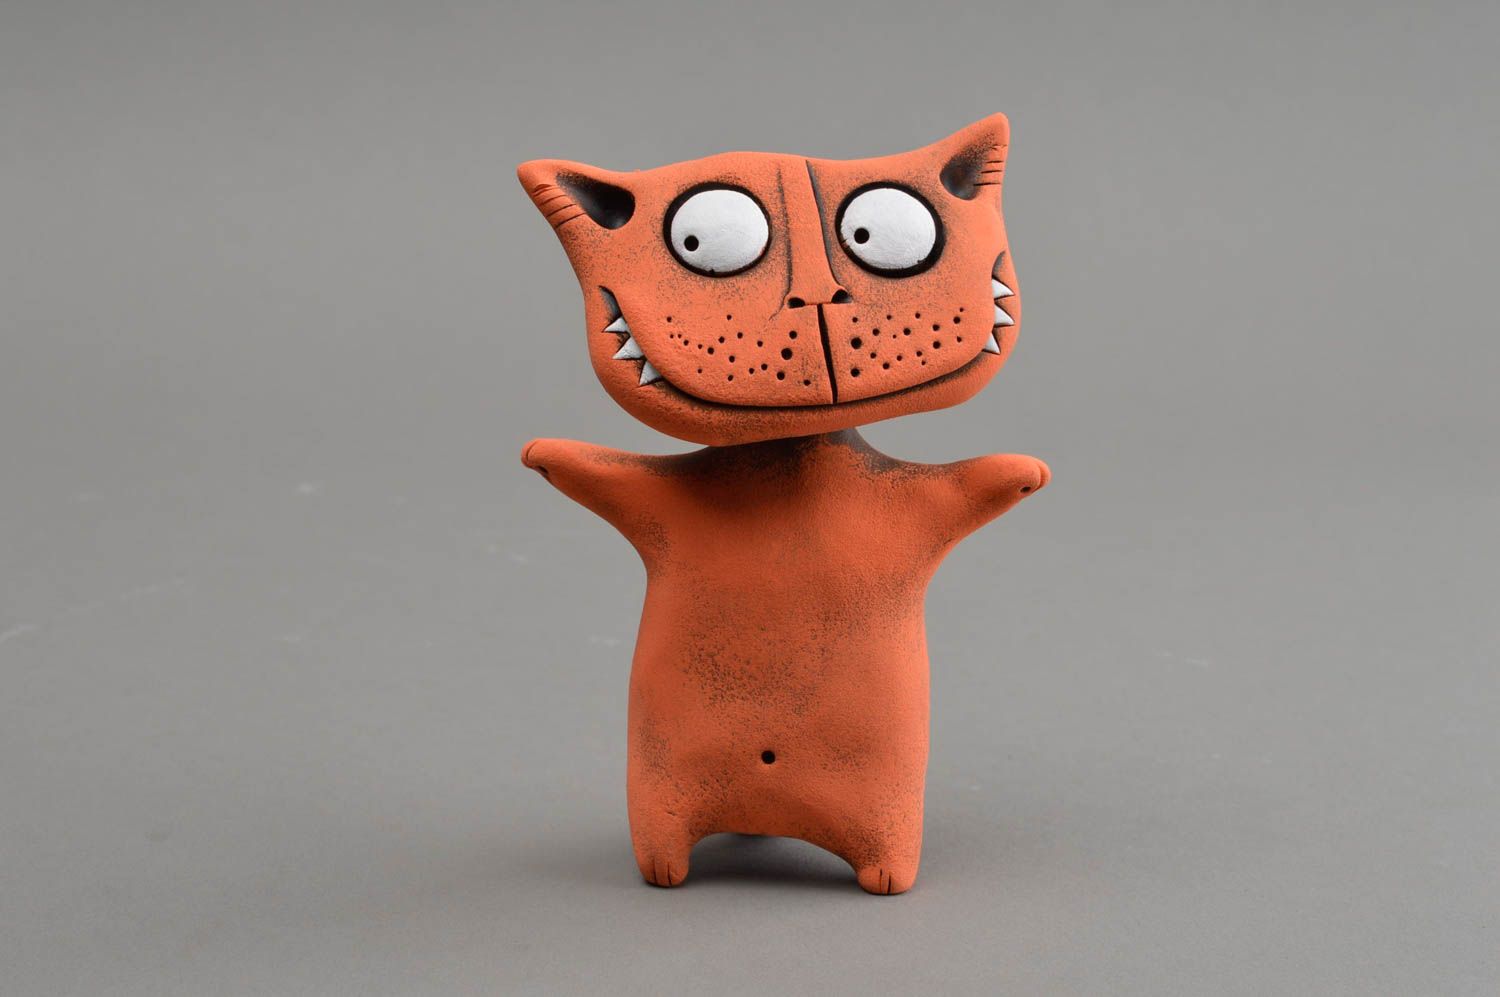 Оранжевая глиняная статуэтка ручной работы в виде кота расписанная красками фото 2